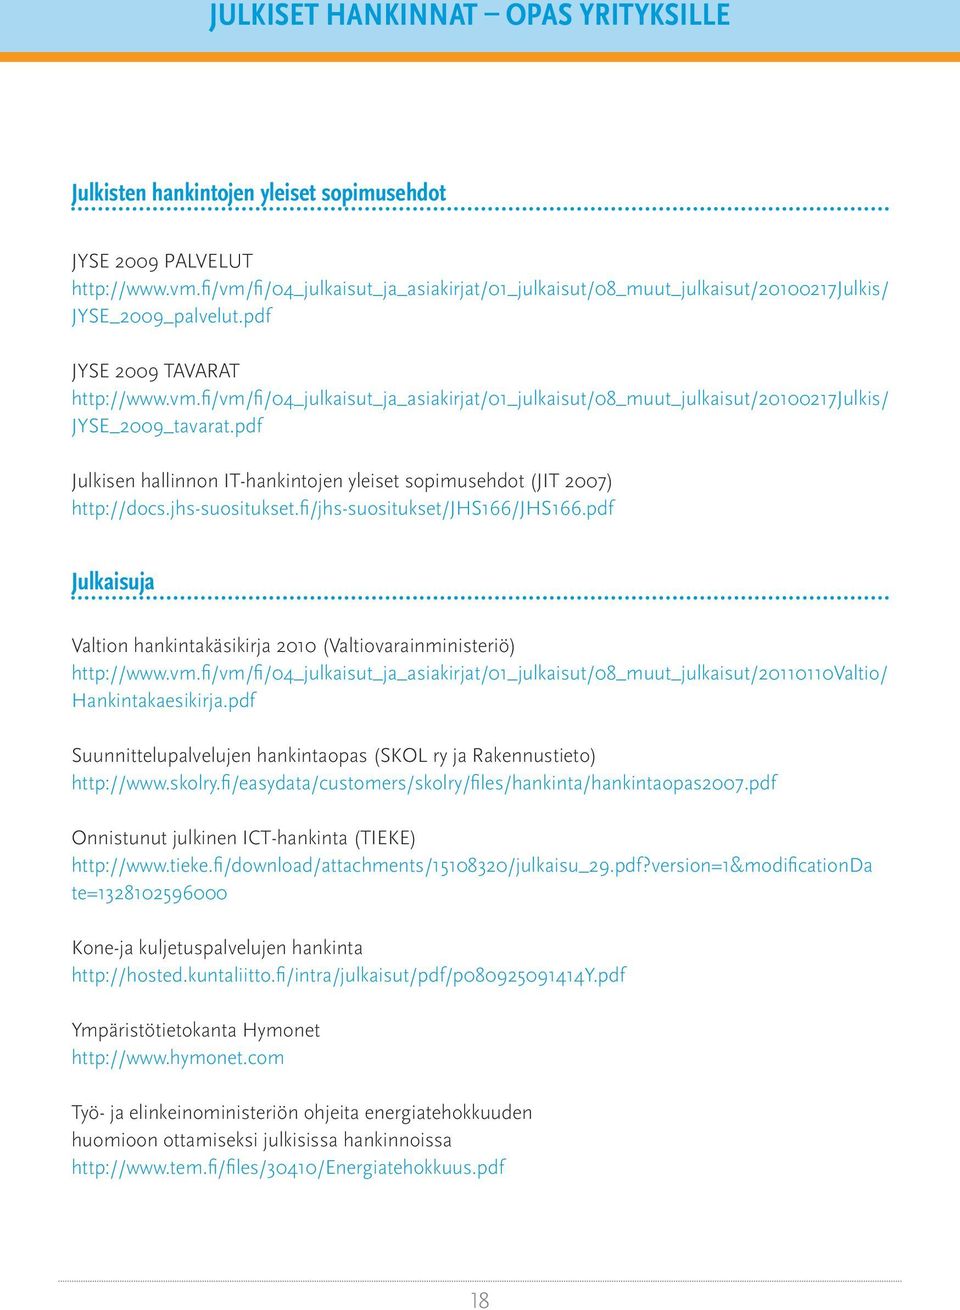 pdf Julkisen hallinnon IT-hankintojen yleiset sopimusehdot (JIT 2007) http://docs.jhs-suositukset.fi/jhs-suositukset/jhs166/jhs166.